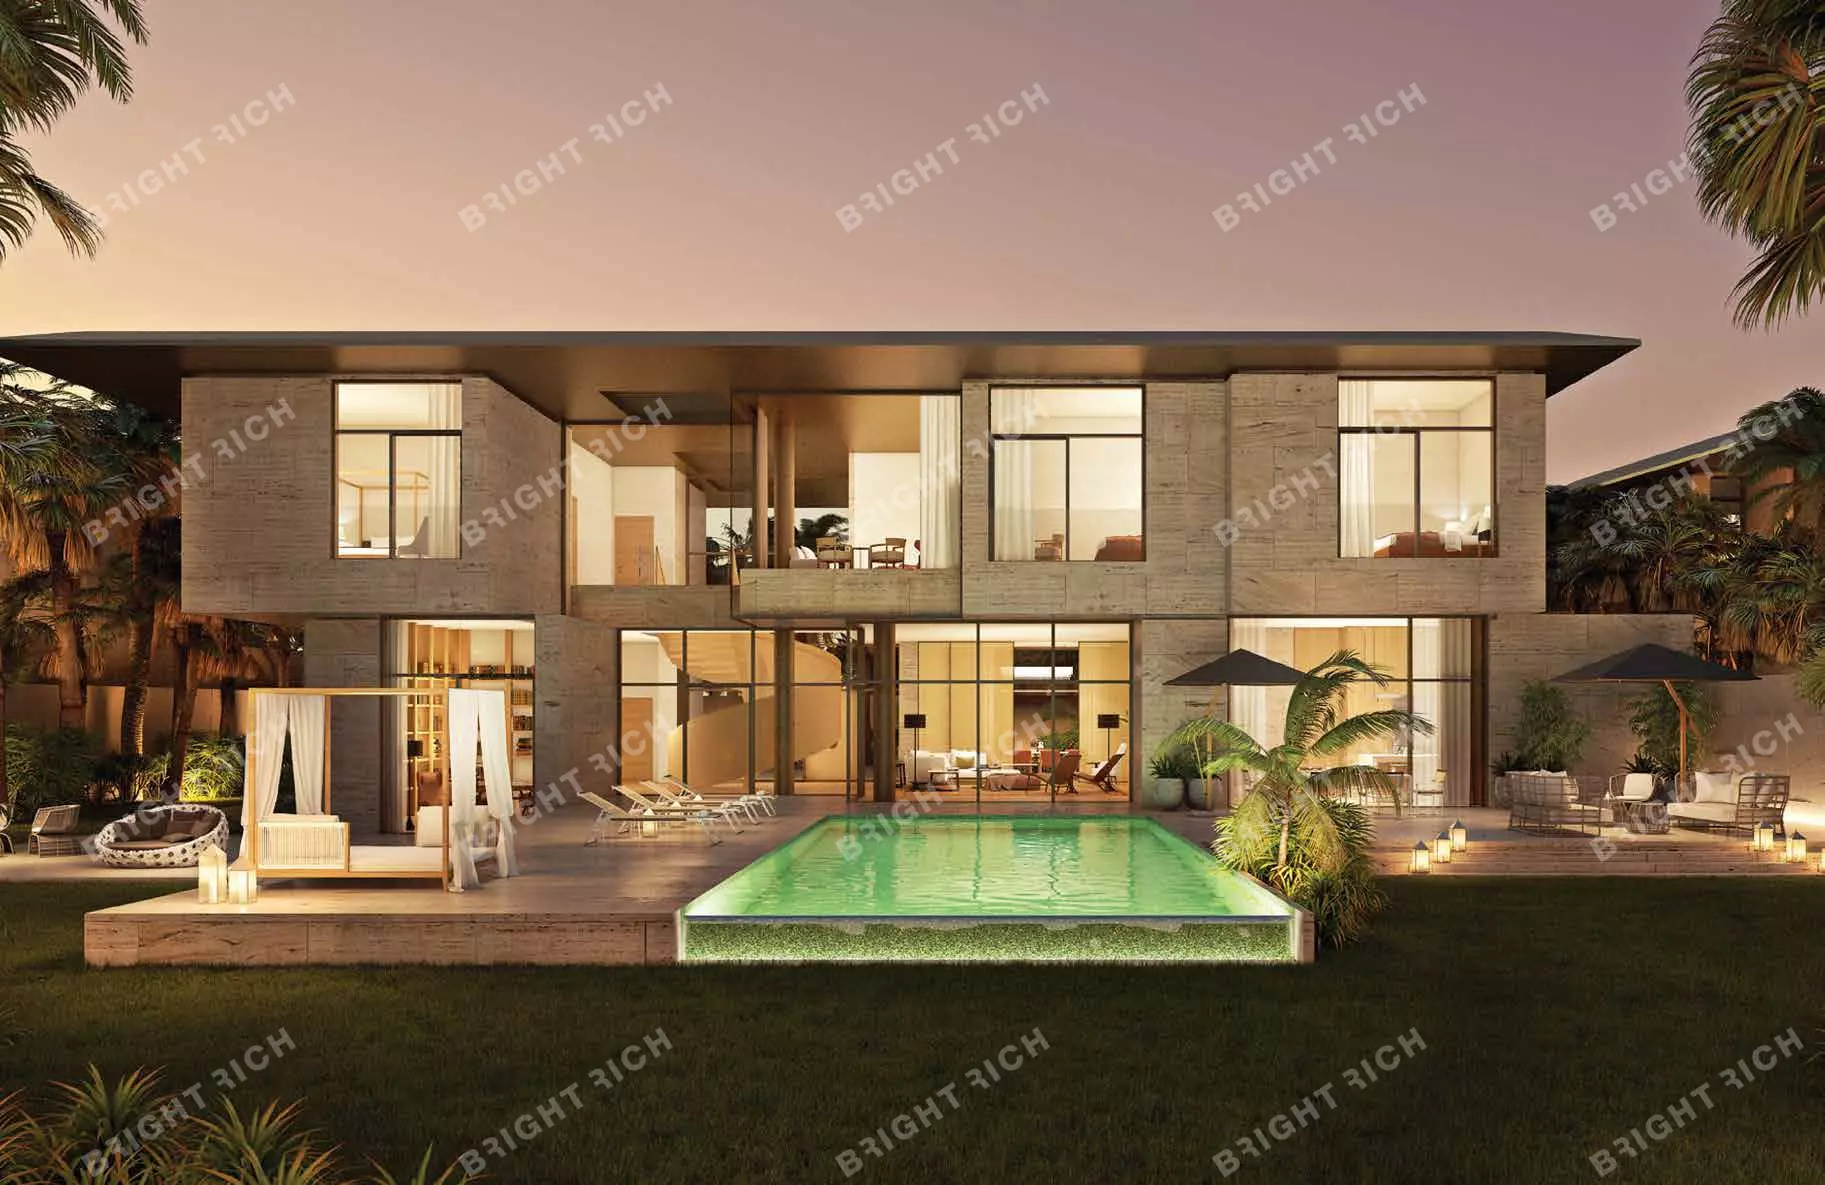 Bvlgari Resort & Residences, apart complex in Dubai - 2